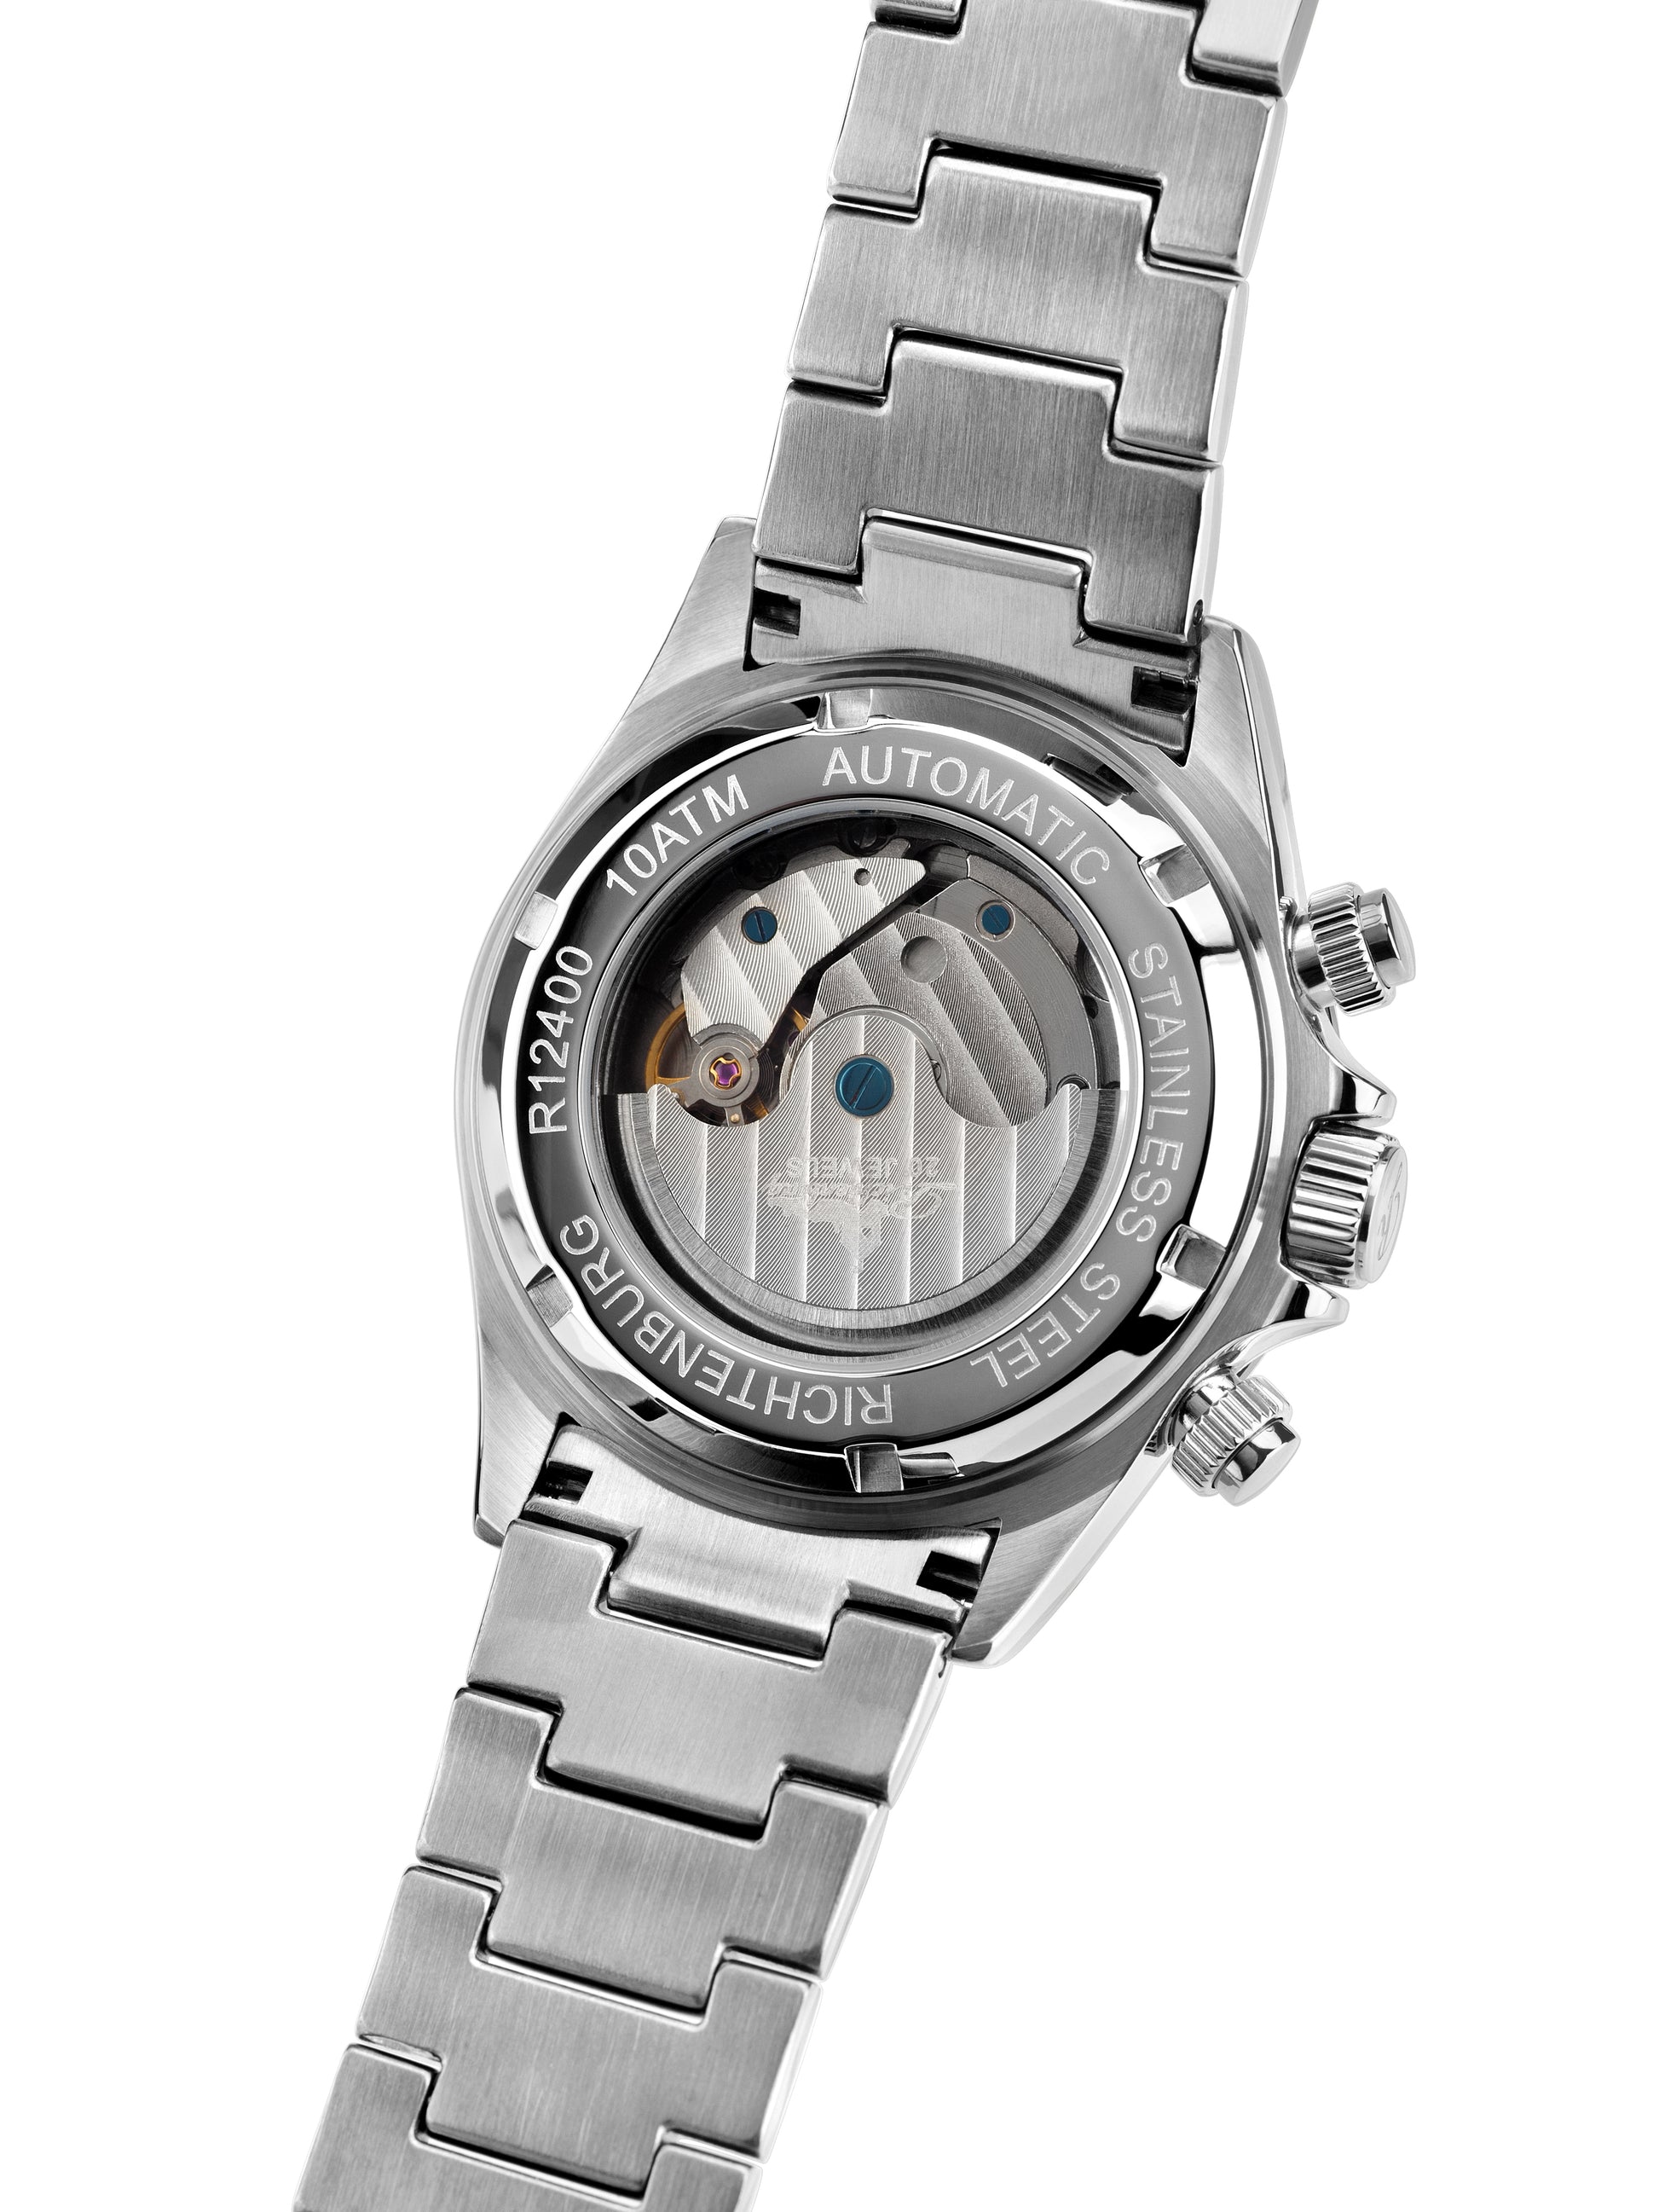 Automatic watches — Fastpace — Richtenburg — steel blue